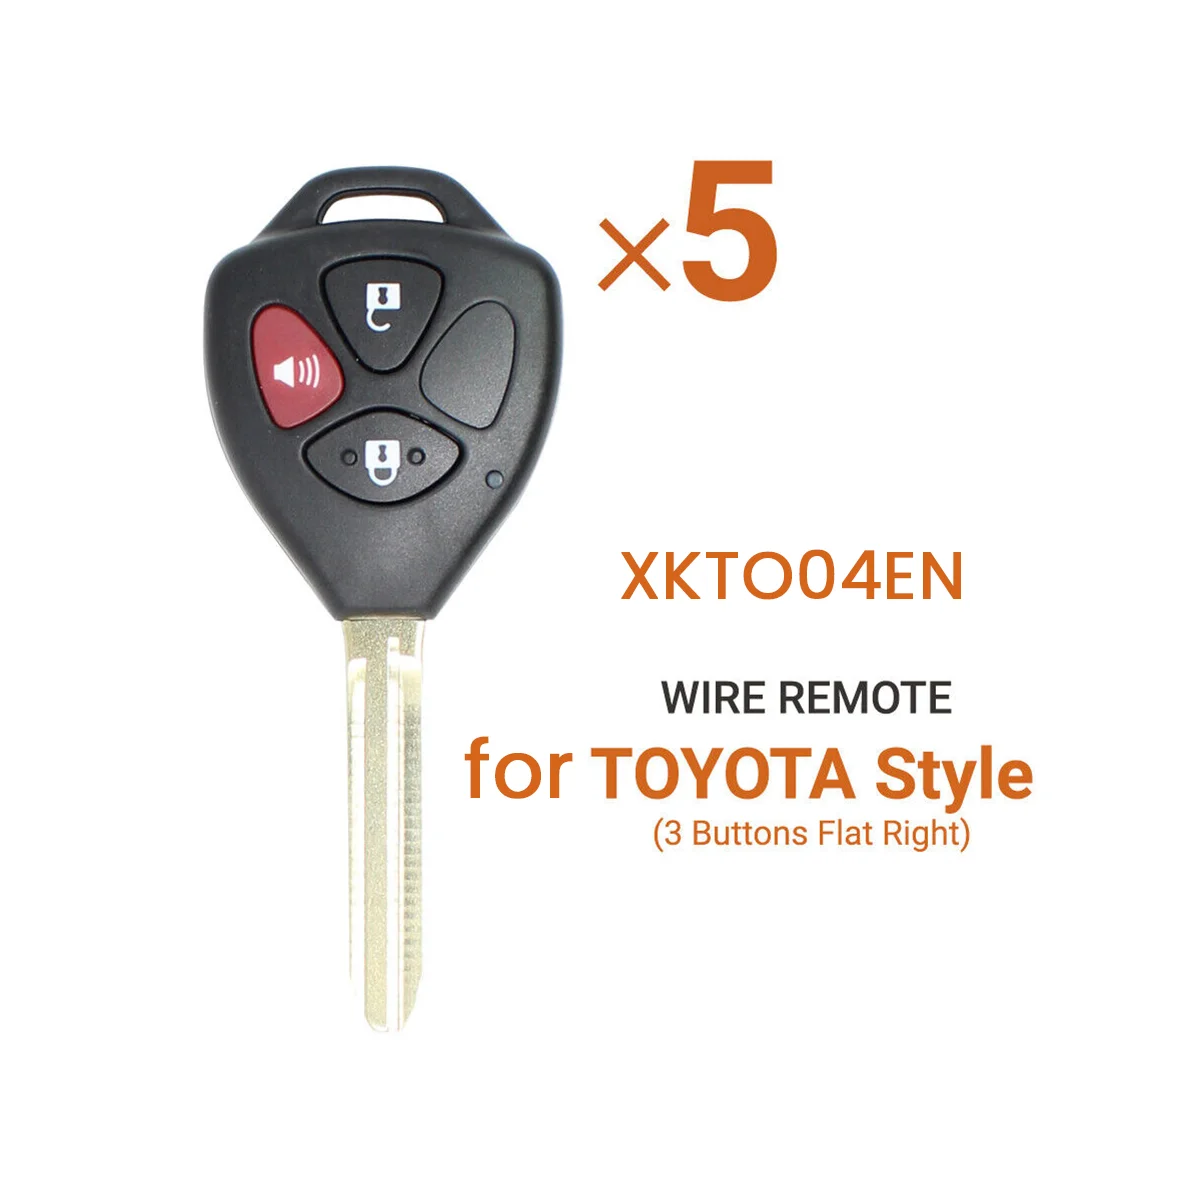 Xhorse XKTO04EN Универсальный проводной дистанционный брелок с 3 кнопками для Toyota Style для VVDI Key Tool 5 шт./лот3